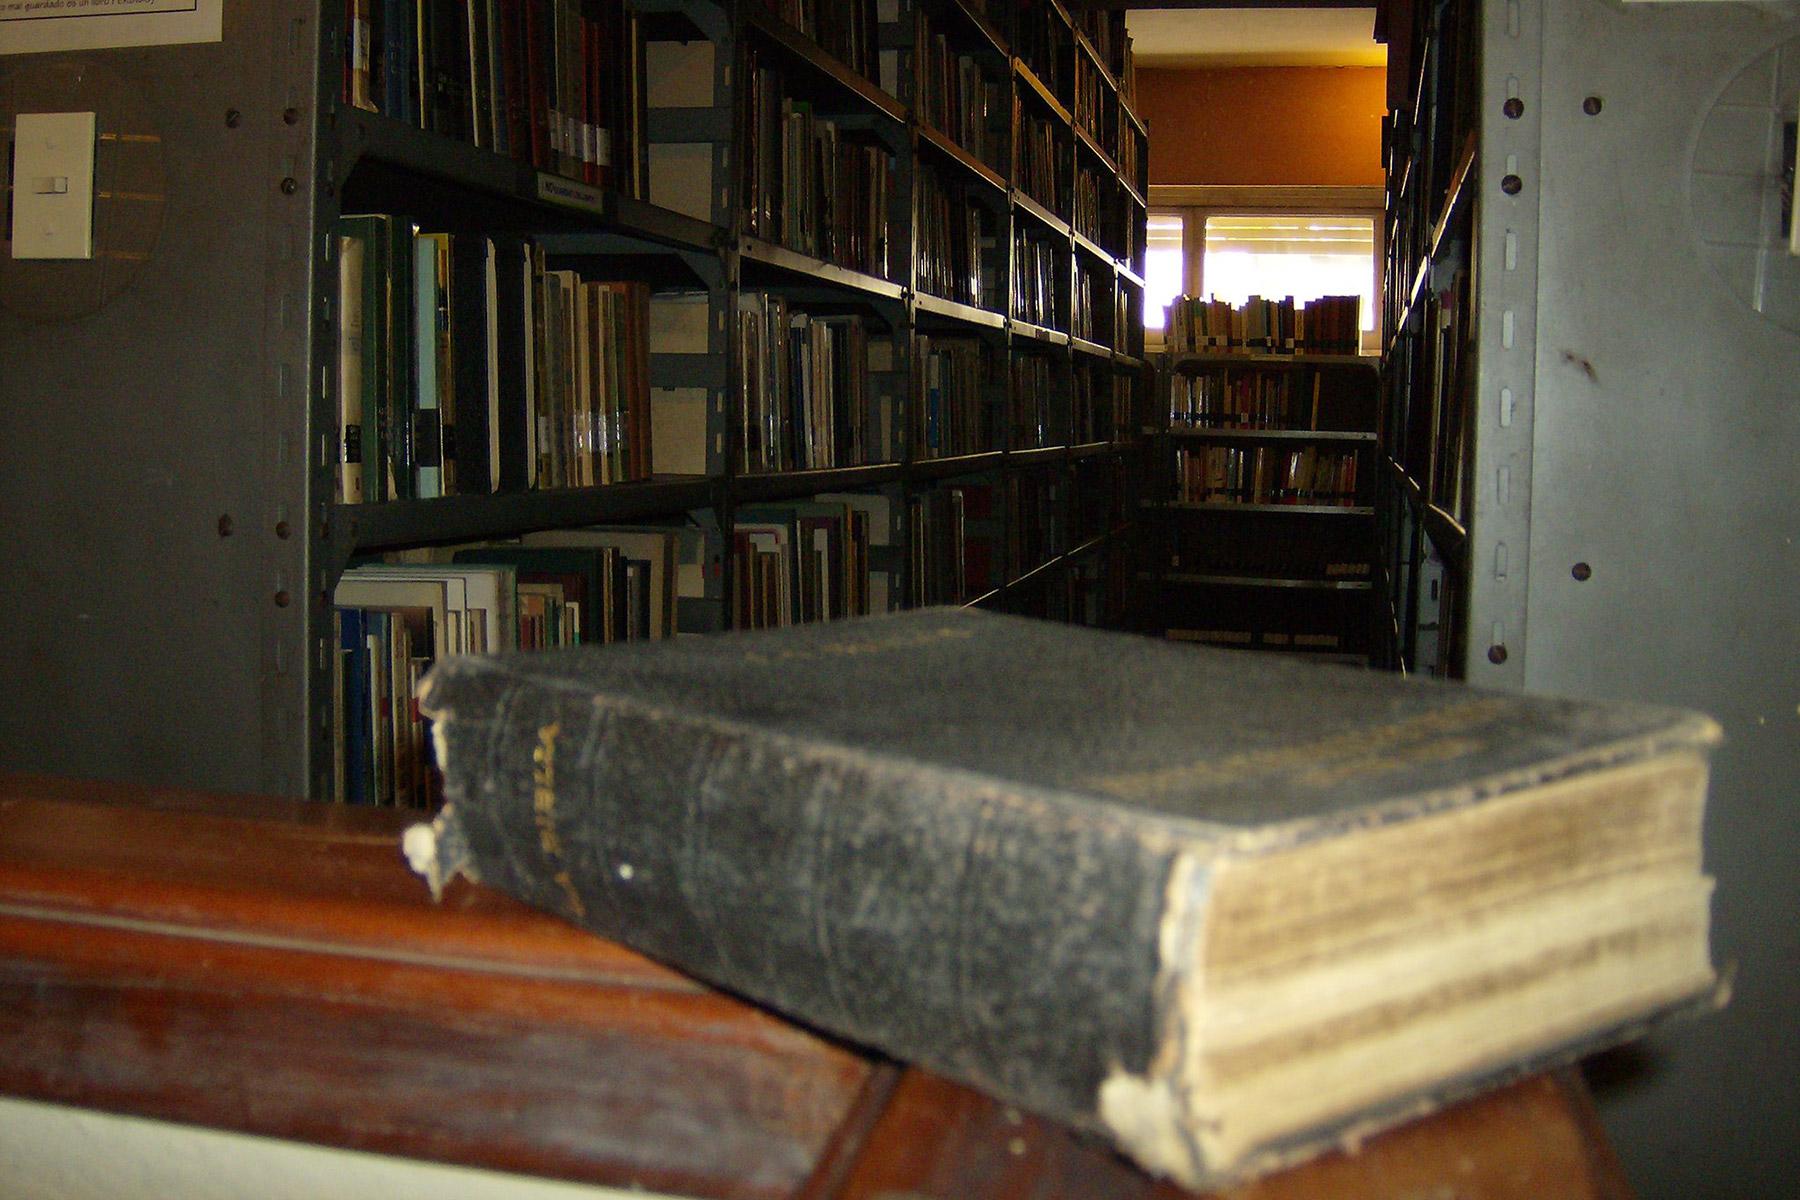 Bücher, die ehemals im Evangelischen Institut für Höhere Theologische Studien (ISEDET) gelagert waren. Das Institut wurde 2016 geschlossen. Foto: ISEDET Archiv